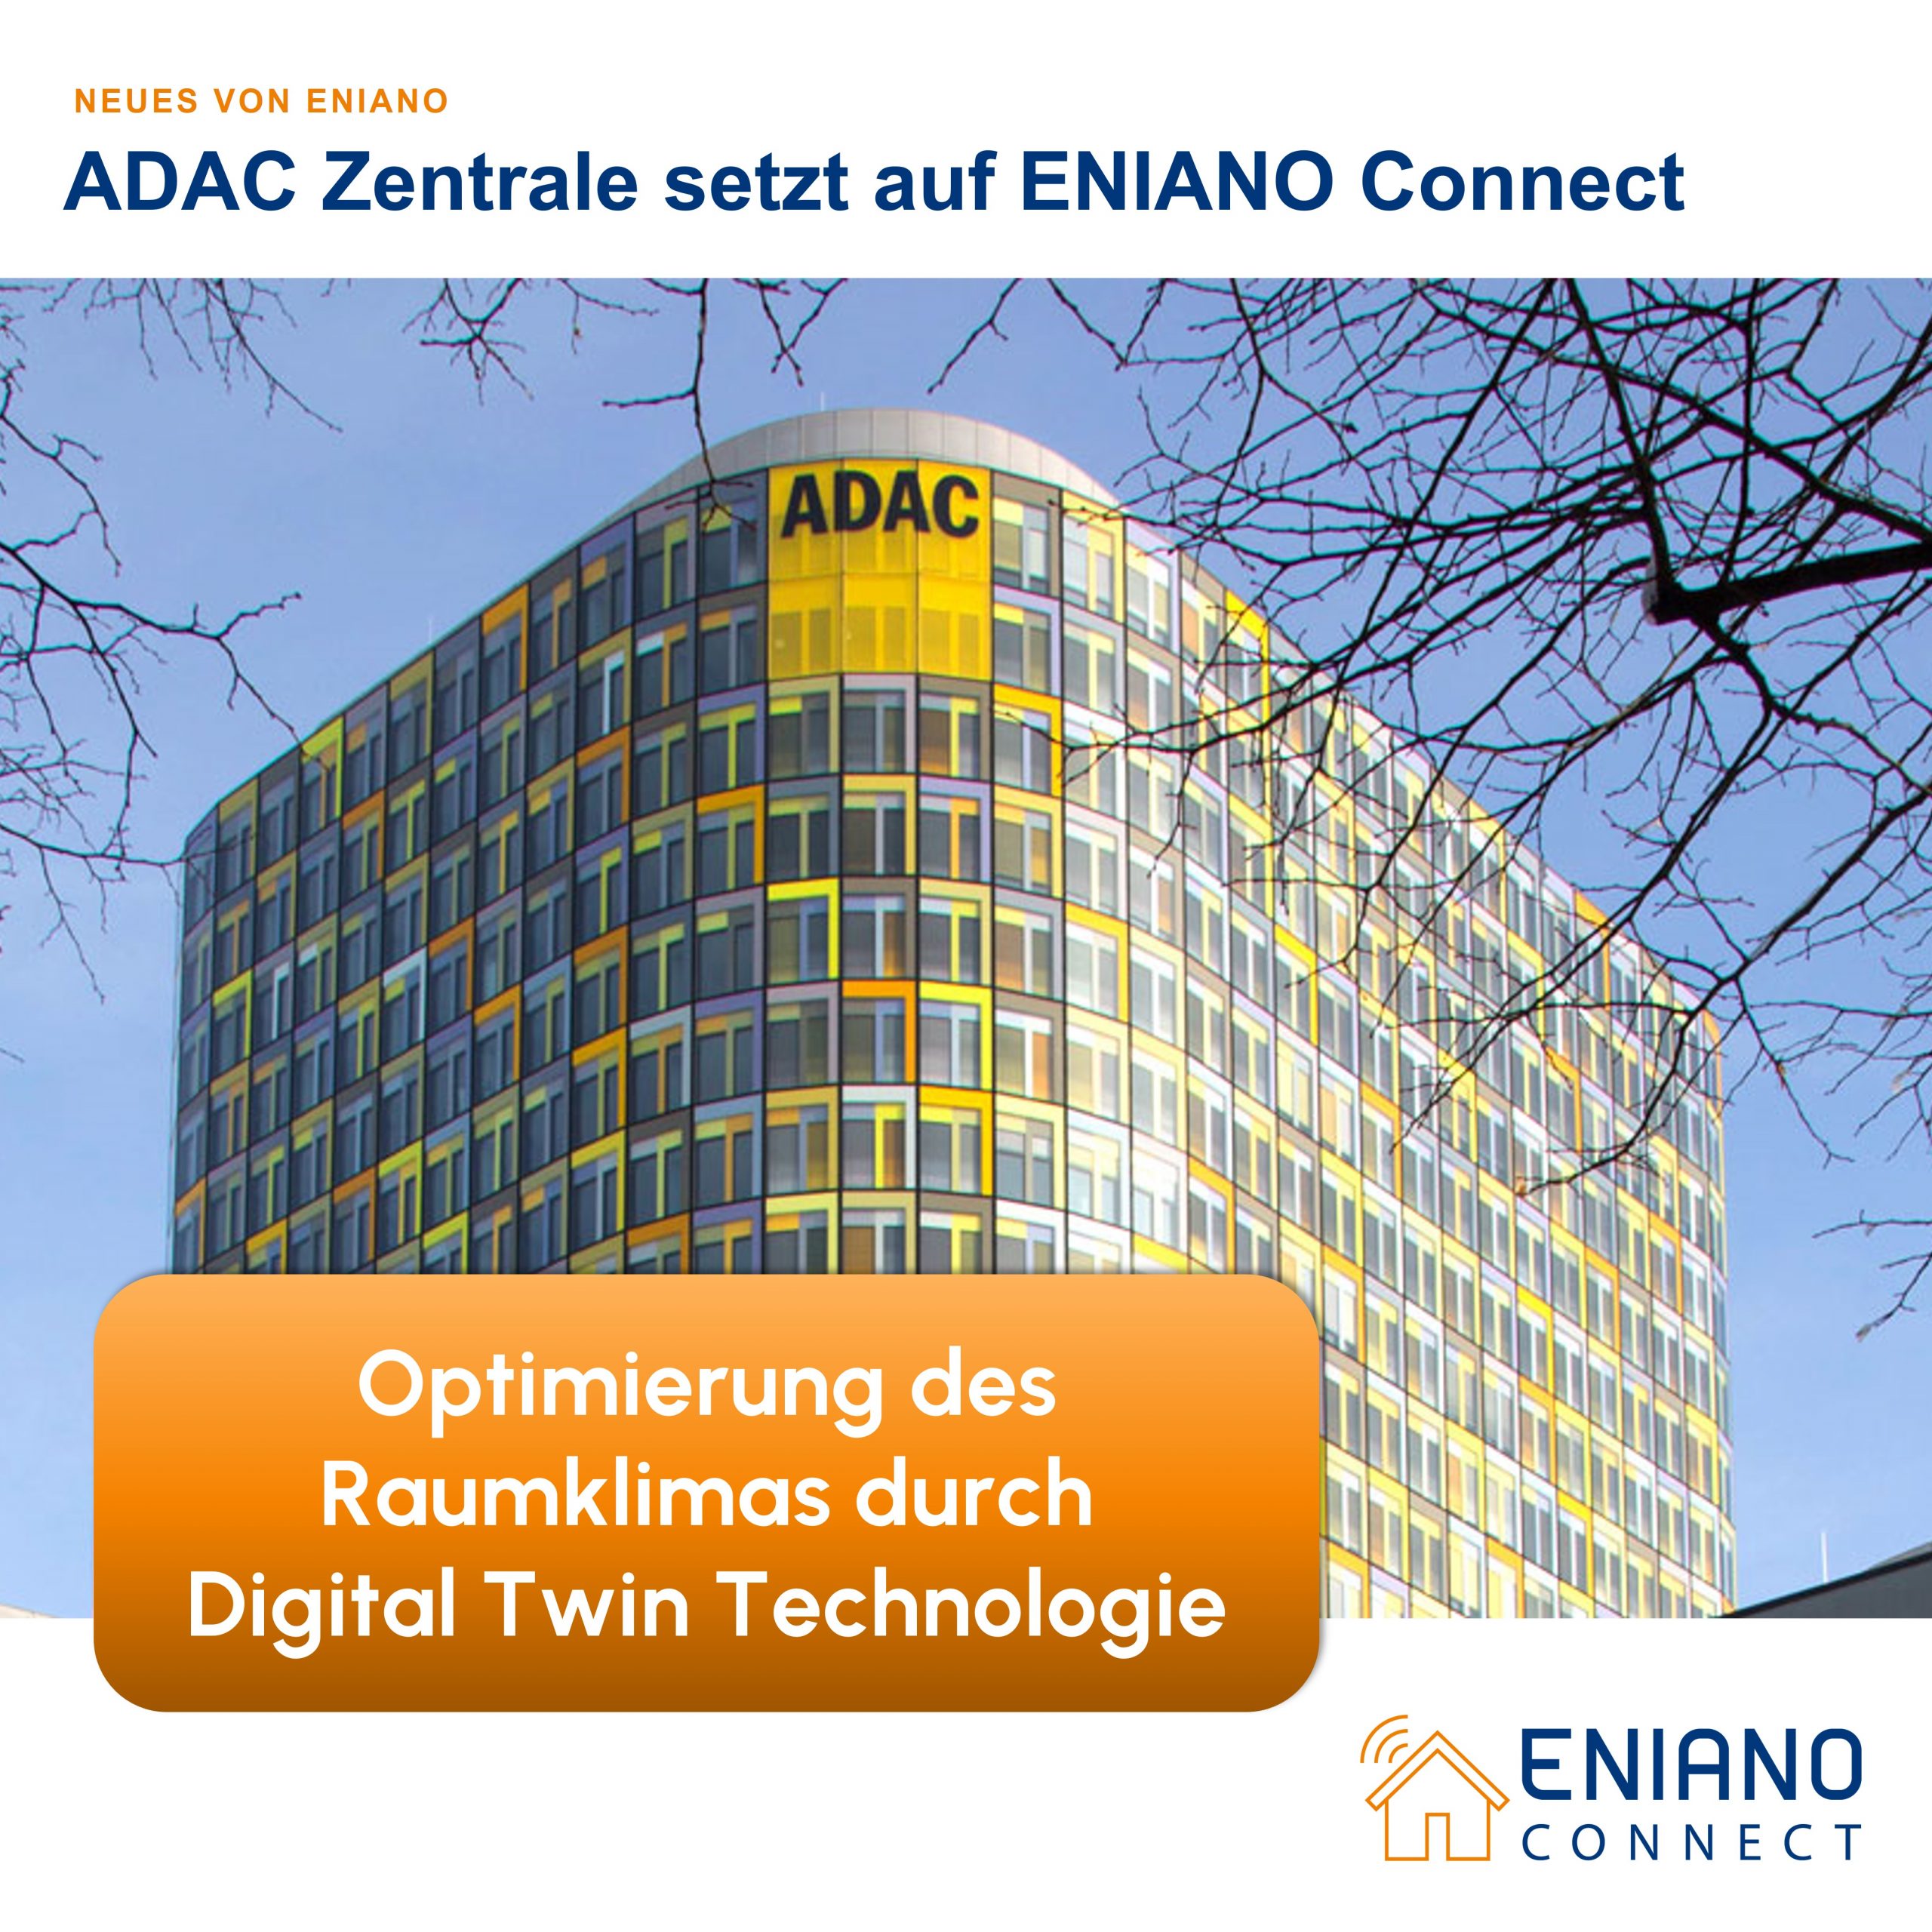 ADAC Zentrale setzt auf ENIANO Connect: Optimierung des Raumklimas durch innovative Digital Twin Technologie